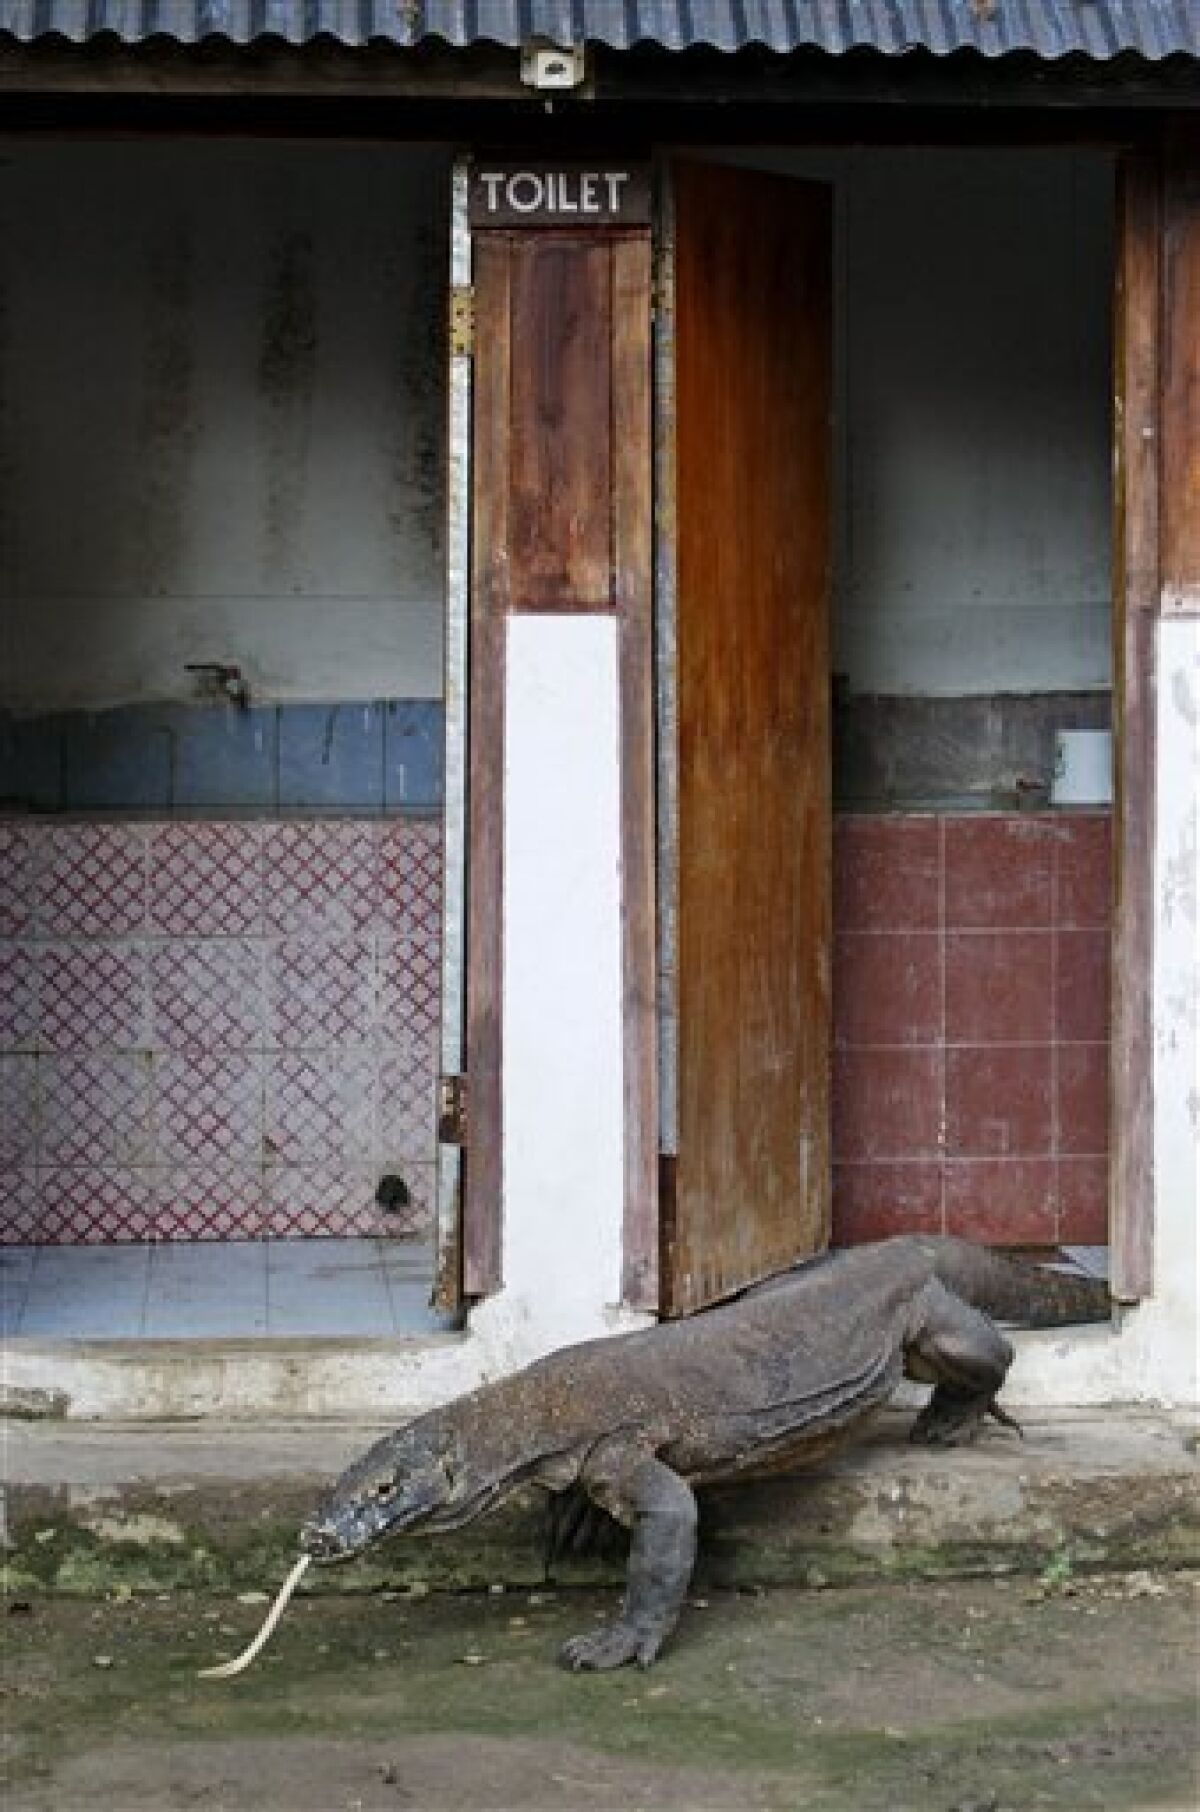 Komodo dragon attacks terrorize Indonesia villages - The San Diego  Union-Tribune